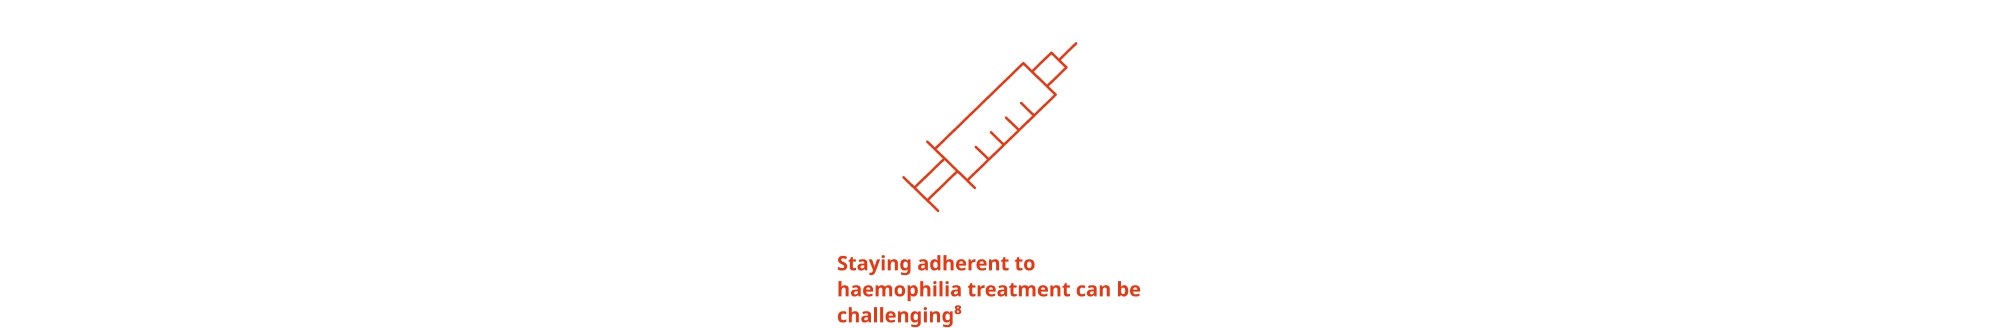 Staying adherent to haemophilia